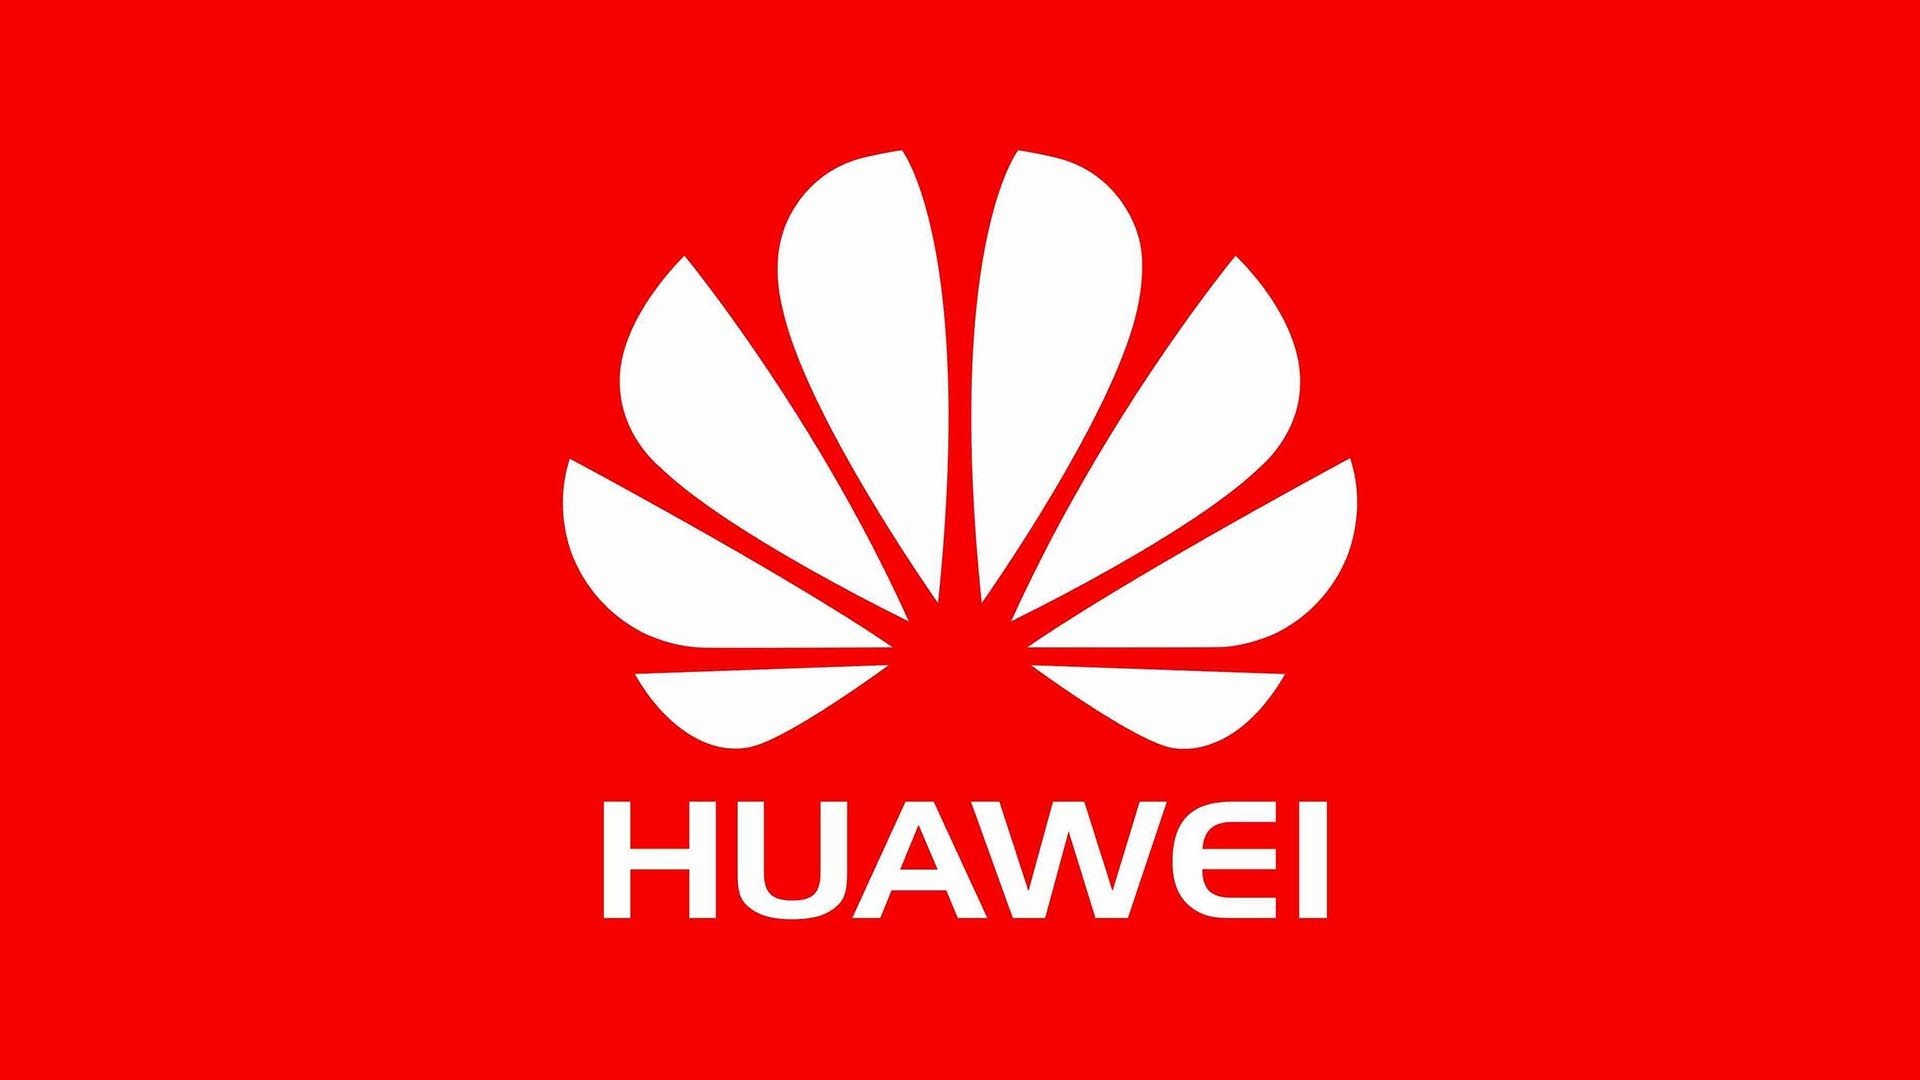 Huawei logo wallpapers, Michelle Sellers post, 1920x1080 Full HD Desktop